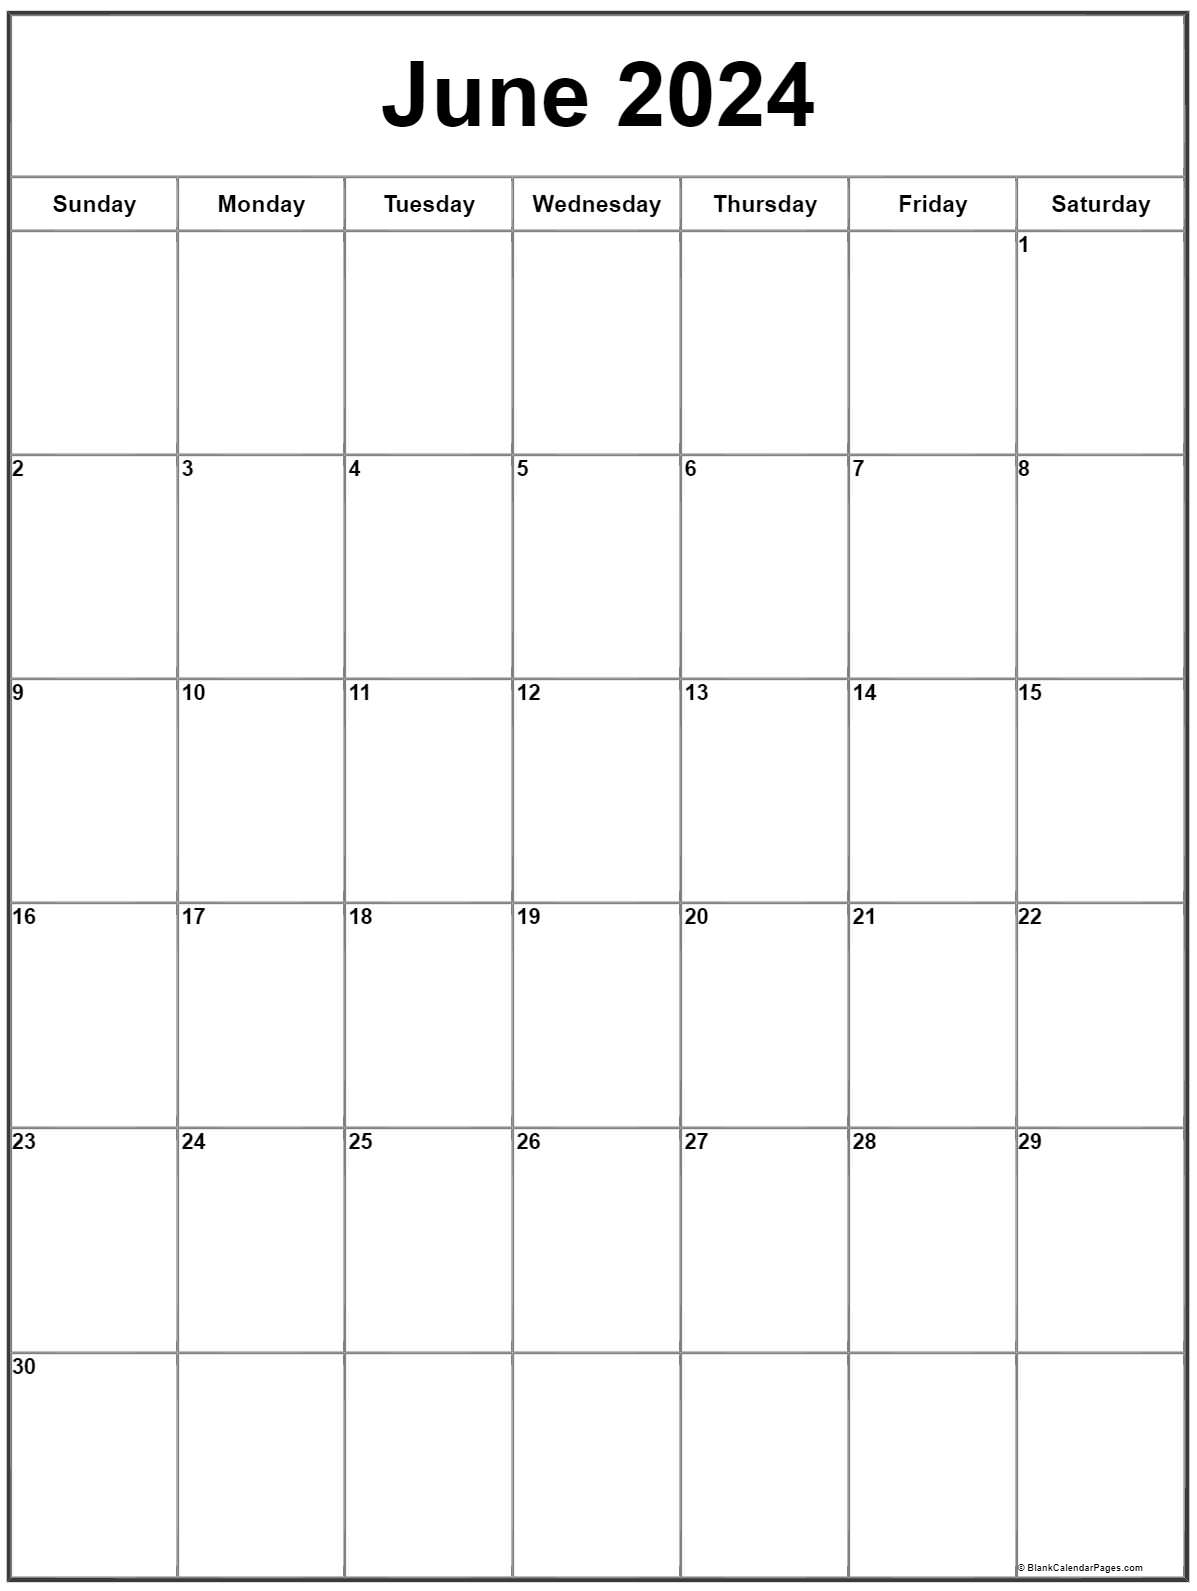 june-2023-calendar-free-printable-calendar-june-2023-calendar-printable-june-2023-calendar